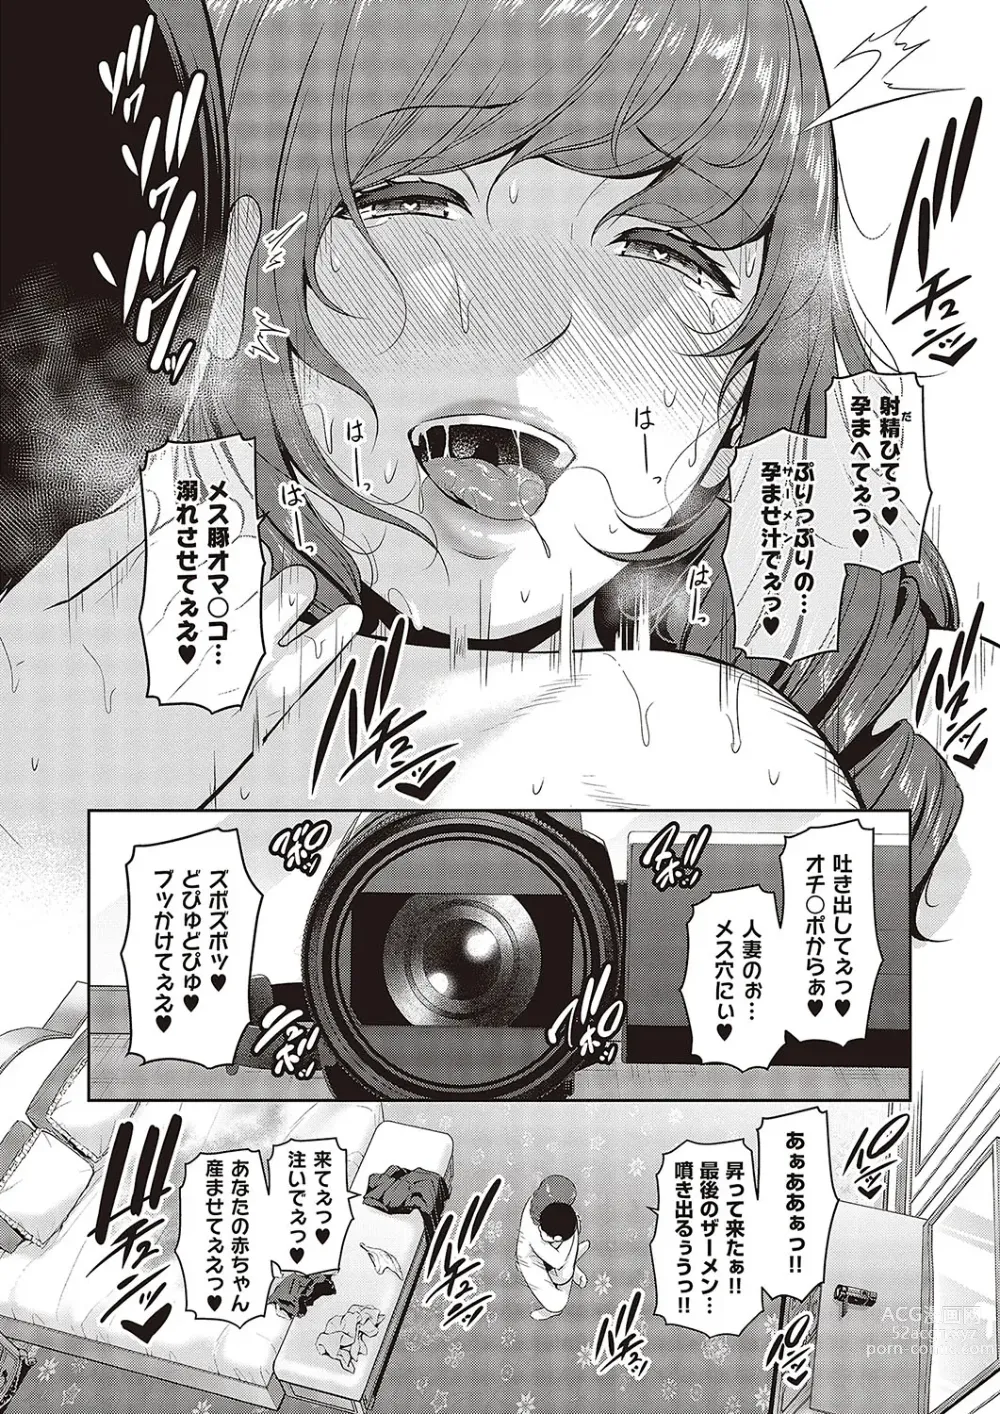 Page 58 of manga 種付けマッチングアプリ Cap.1-2